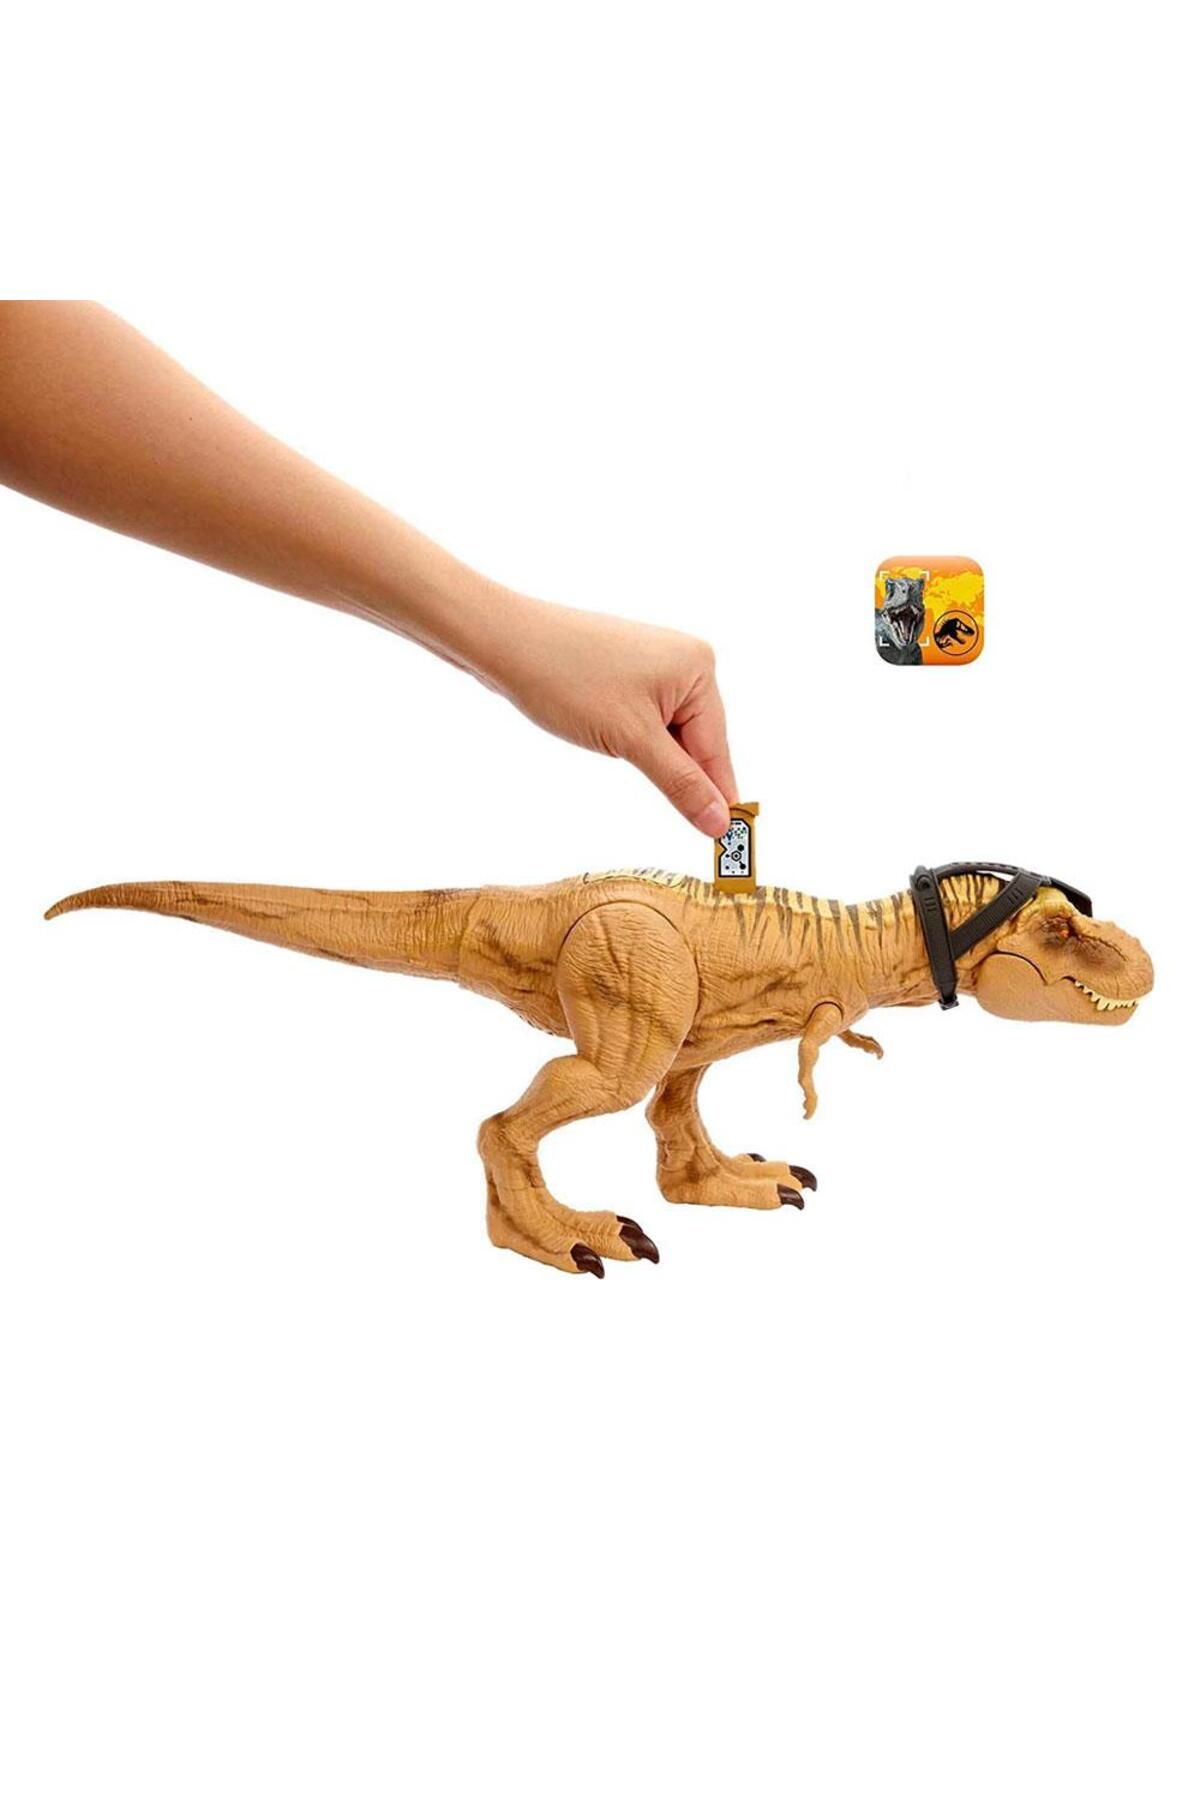 Jurassic World Gürleyen Görkemli T-Rex Figürü HNT62 Fiyatı, Yorumları -  Trendyol